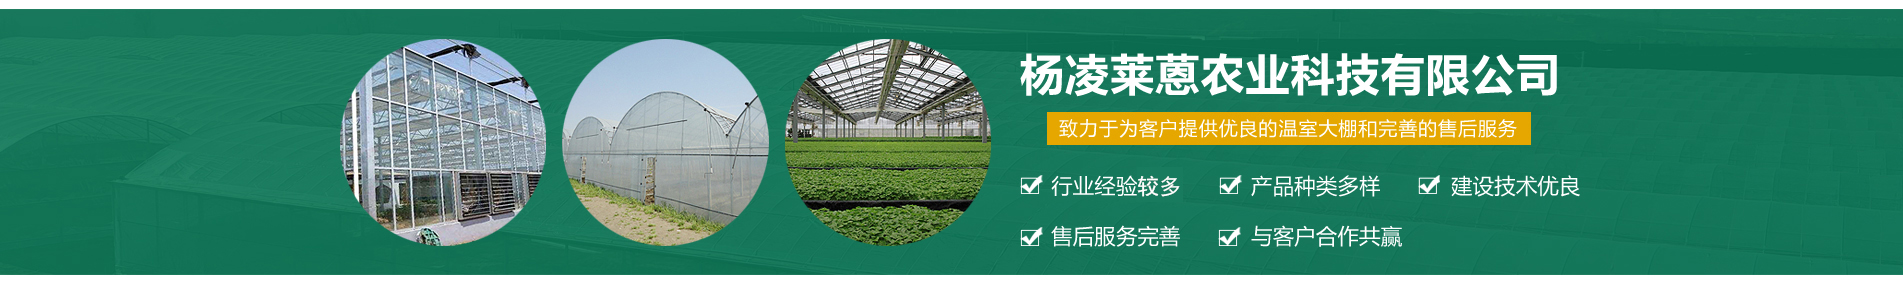 楊凌萊蒽農業科技有限公司